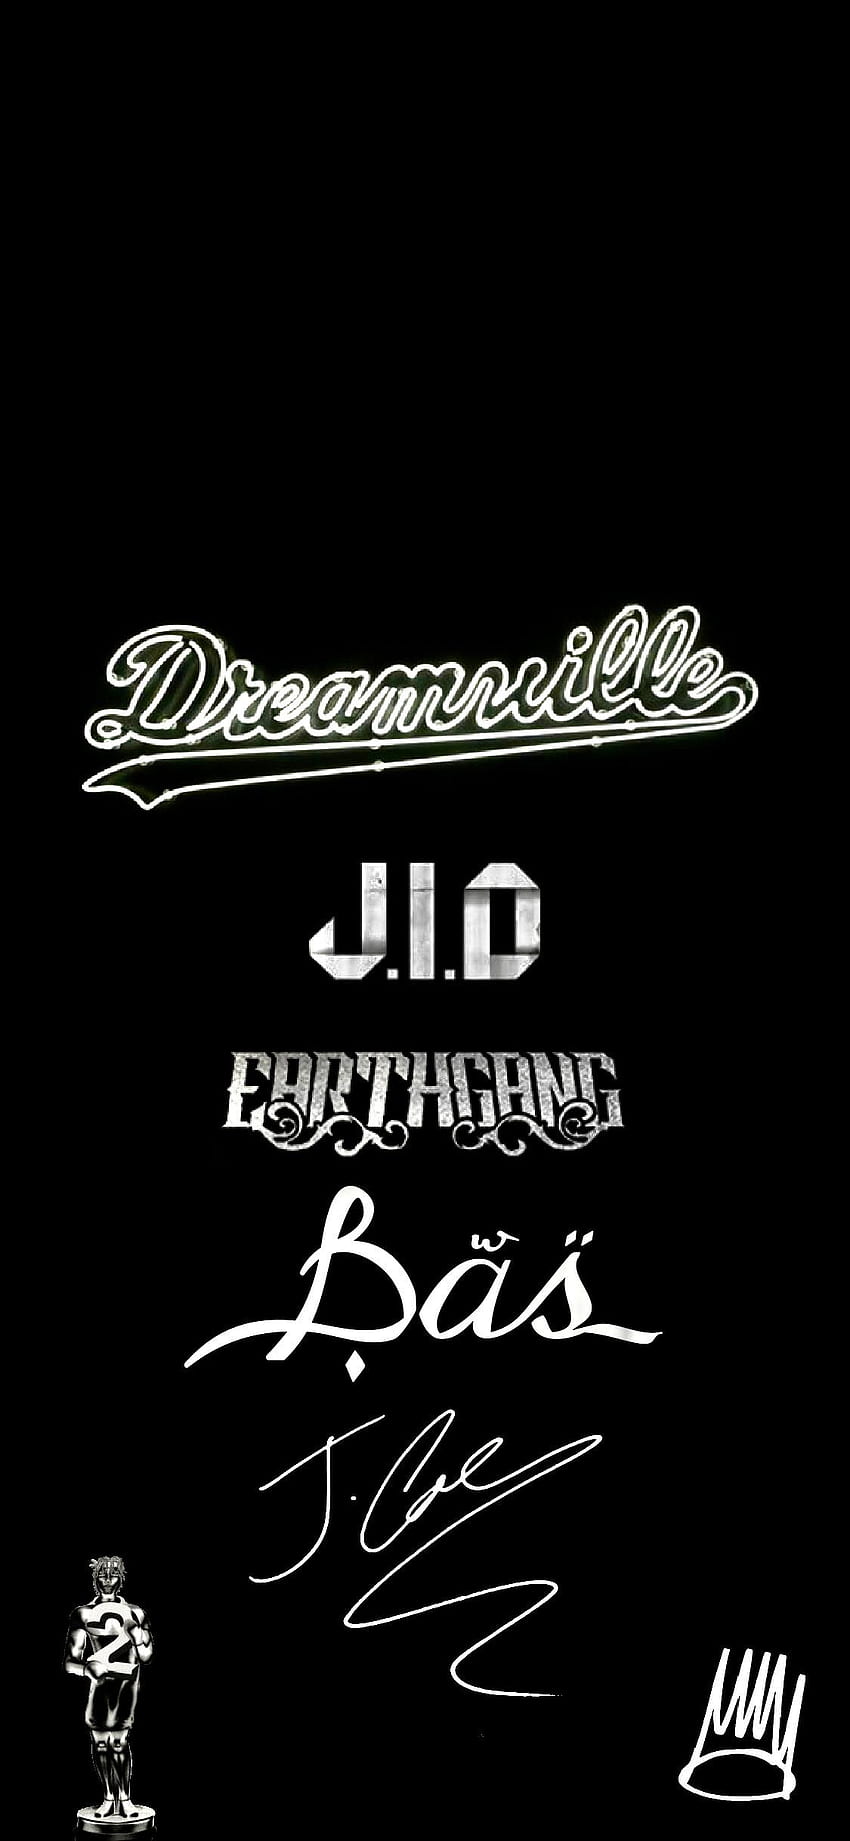 FIJO Dreamville, J. Cole, Bas, JID y EARTHGANG. : dreamvillerecords, La venganza de los soñadores fondo de pantalla del teléfono